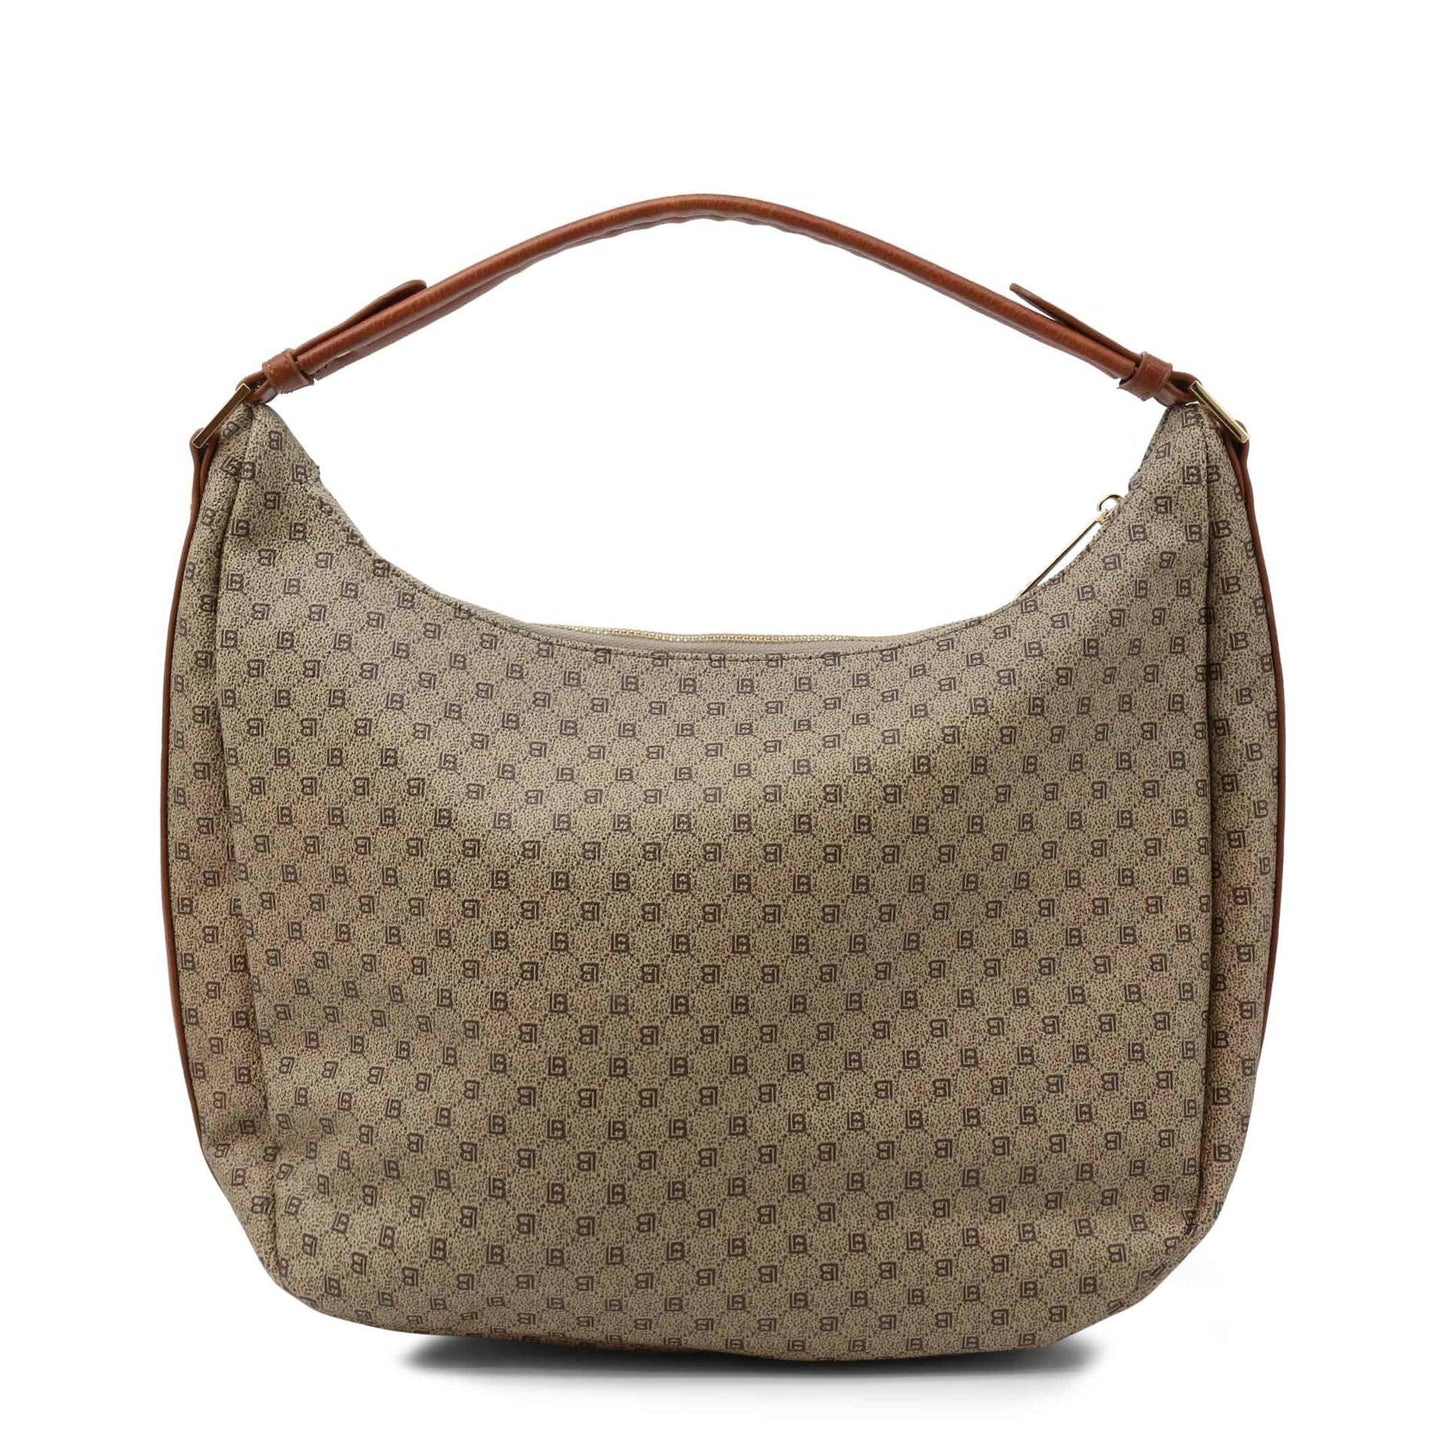 Laura Biagiotti Women Shoulder Bags - Handbag - Guocali